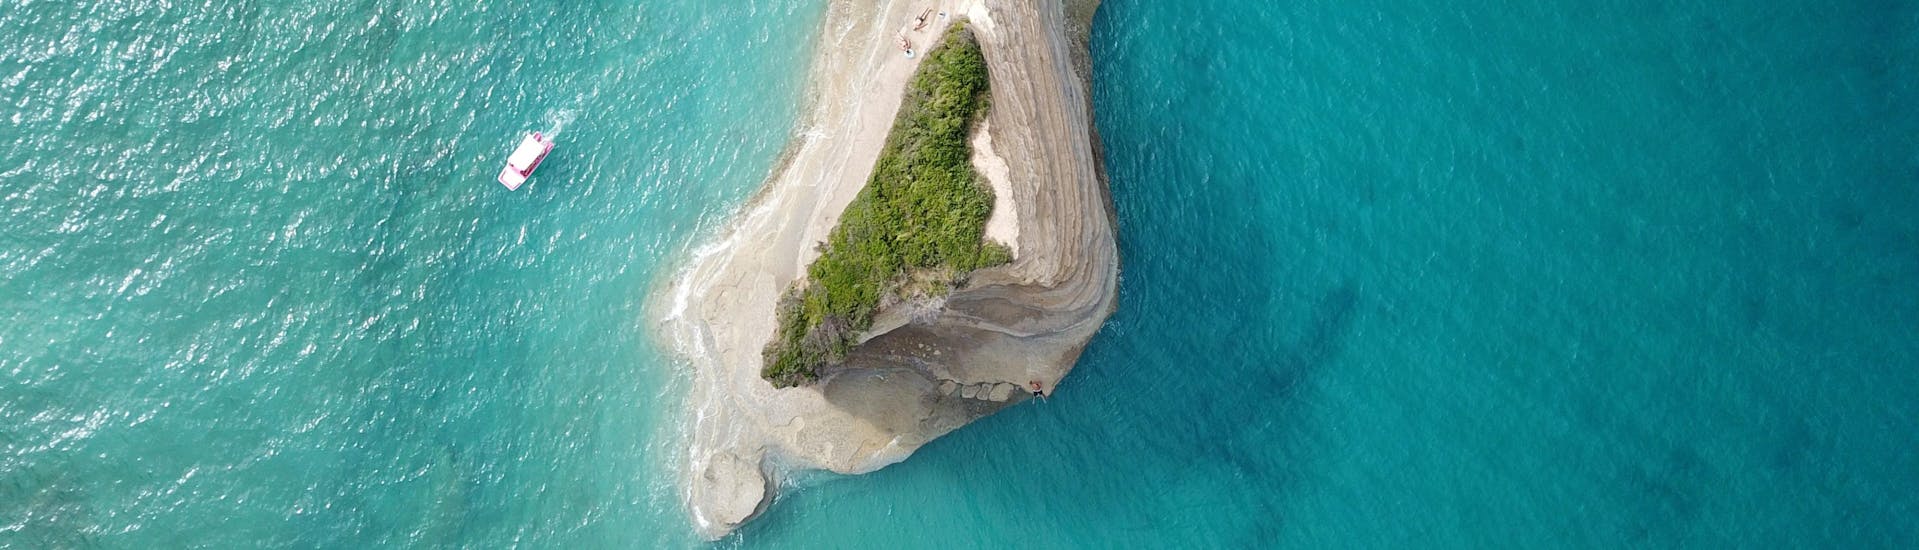 Foto van een prachtig afgelegen eiland, bereikbaar met bootverhuur vanuit Corfu.